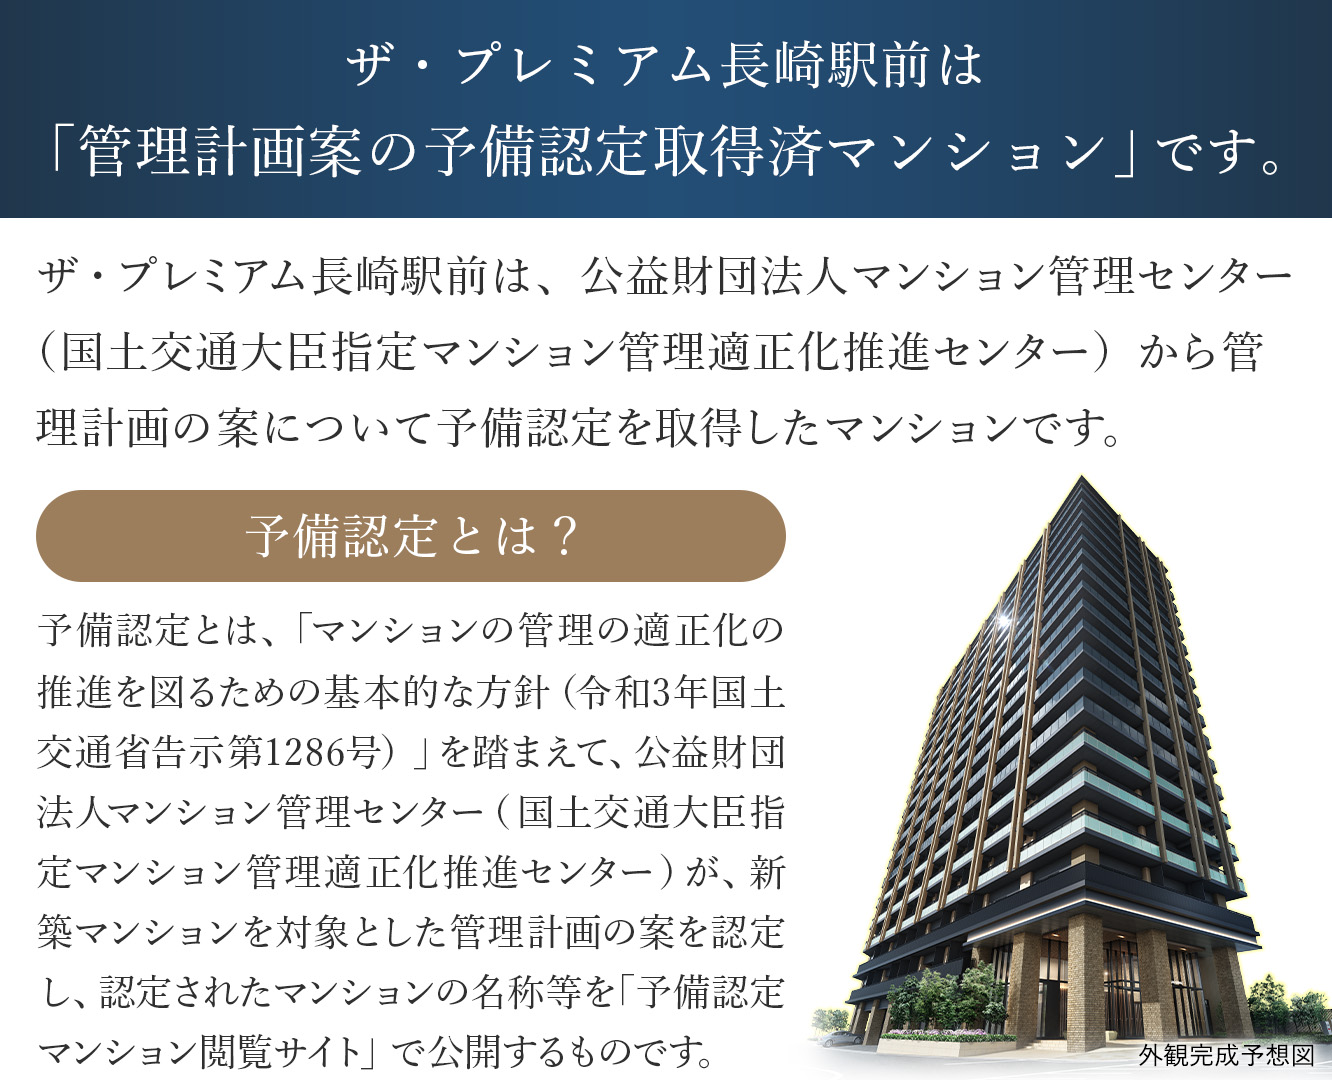 ザ・プレミアム長崎駅前は「管理計画案の予備認定取得済マンション」です。